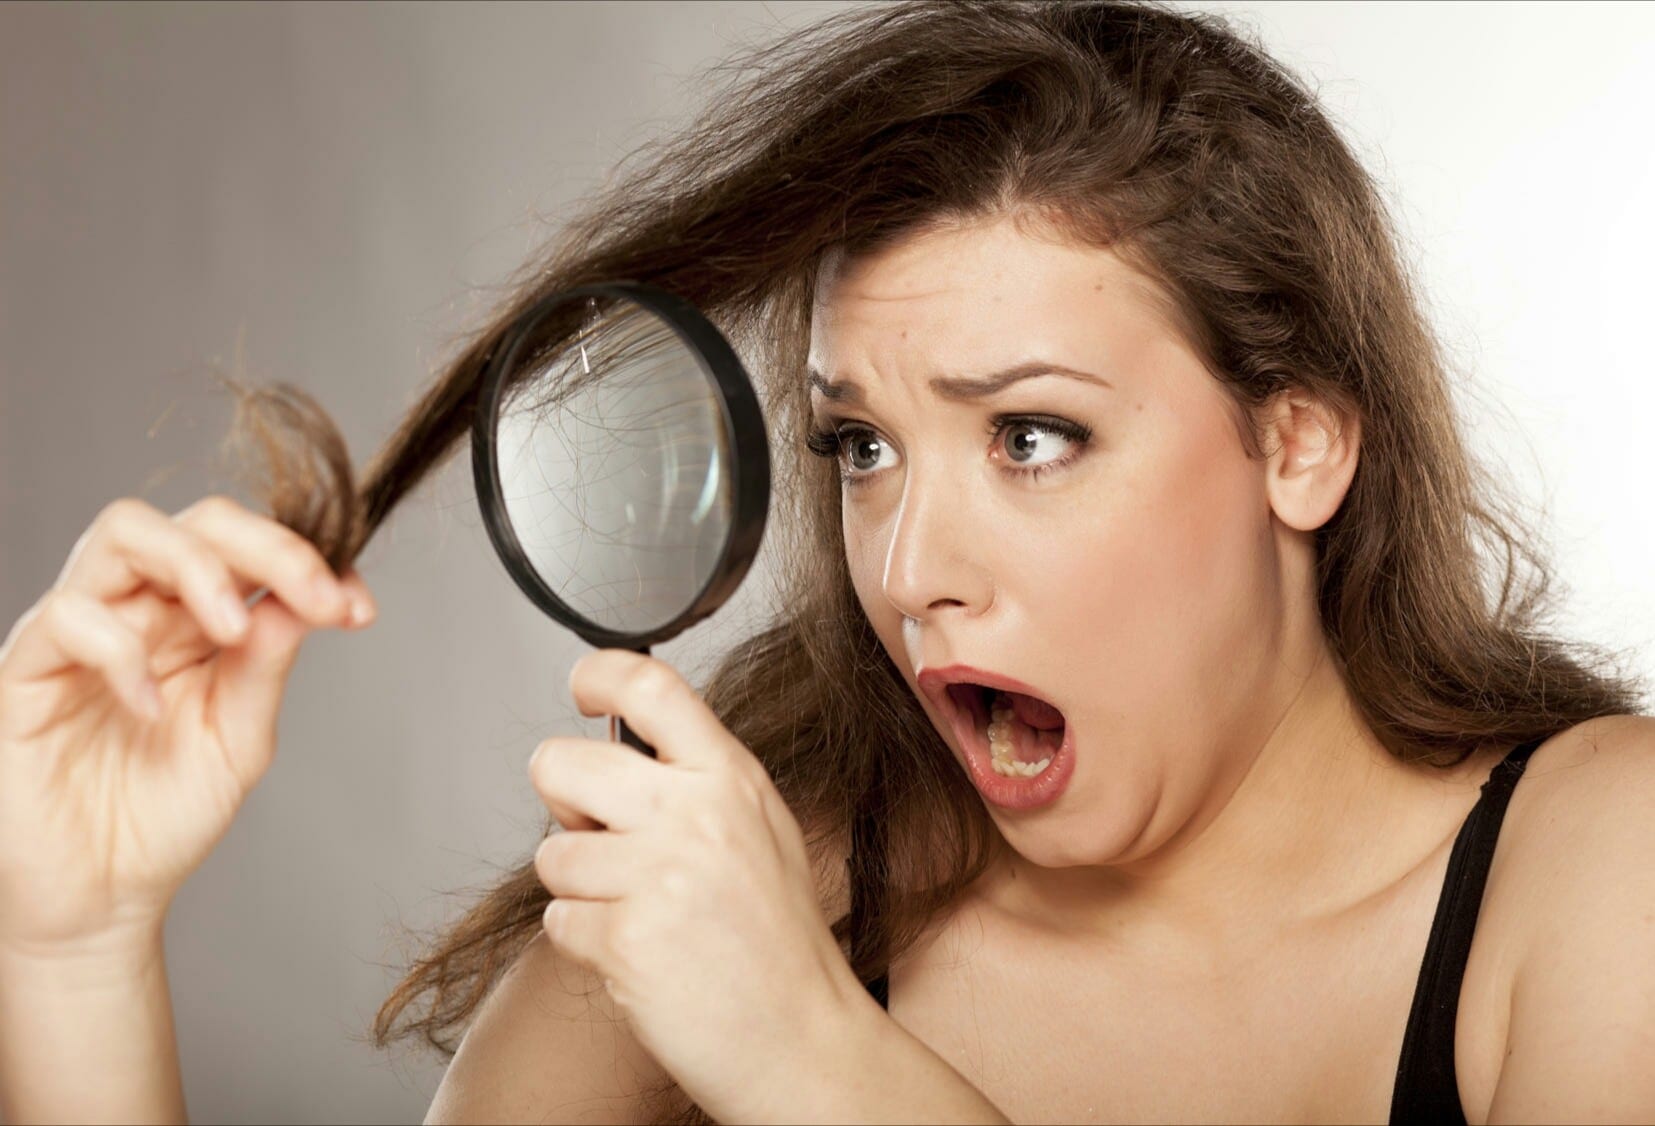 Pourquoi les femmes ont elles les cheveux plus courts avec lage doingbuzz - Pourquoi les femmes ont-elles les cheveux plus courts avec l’âge?